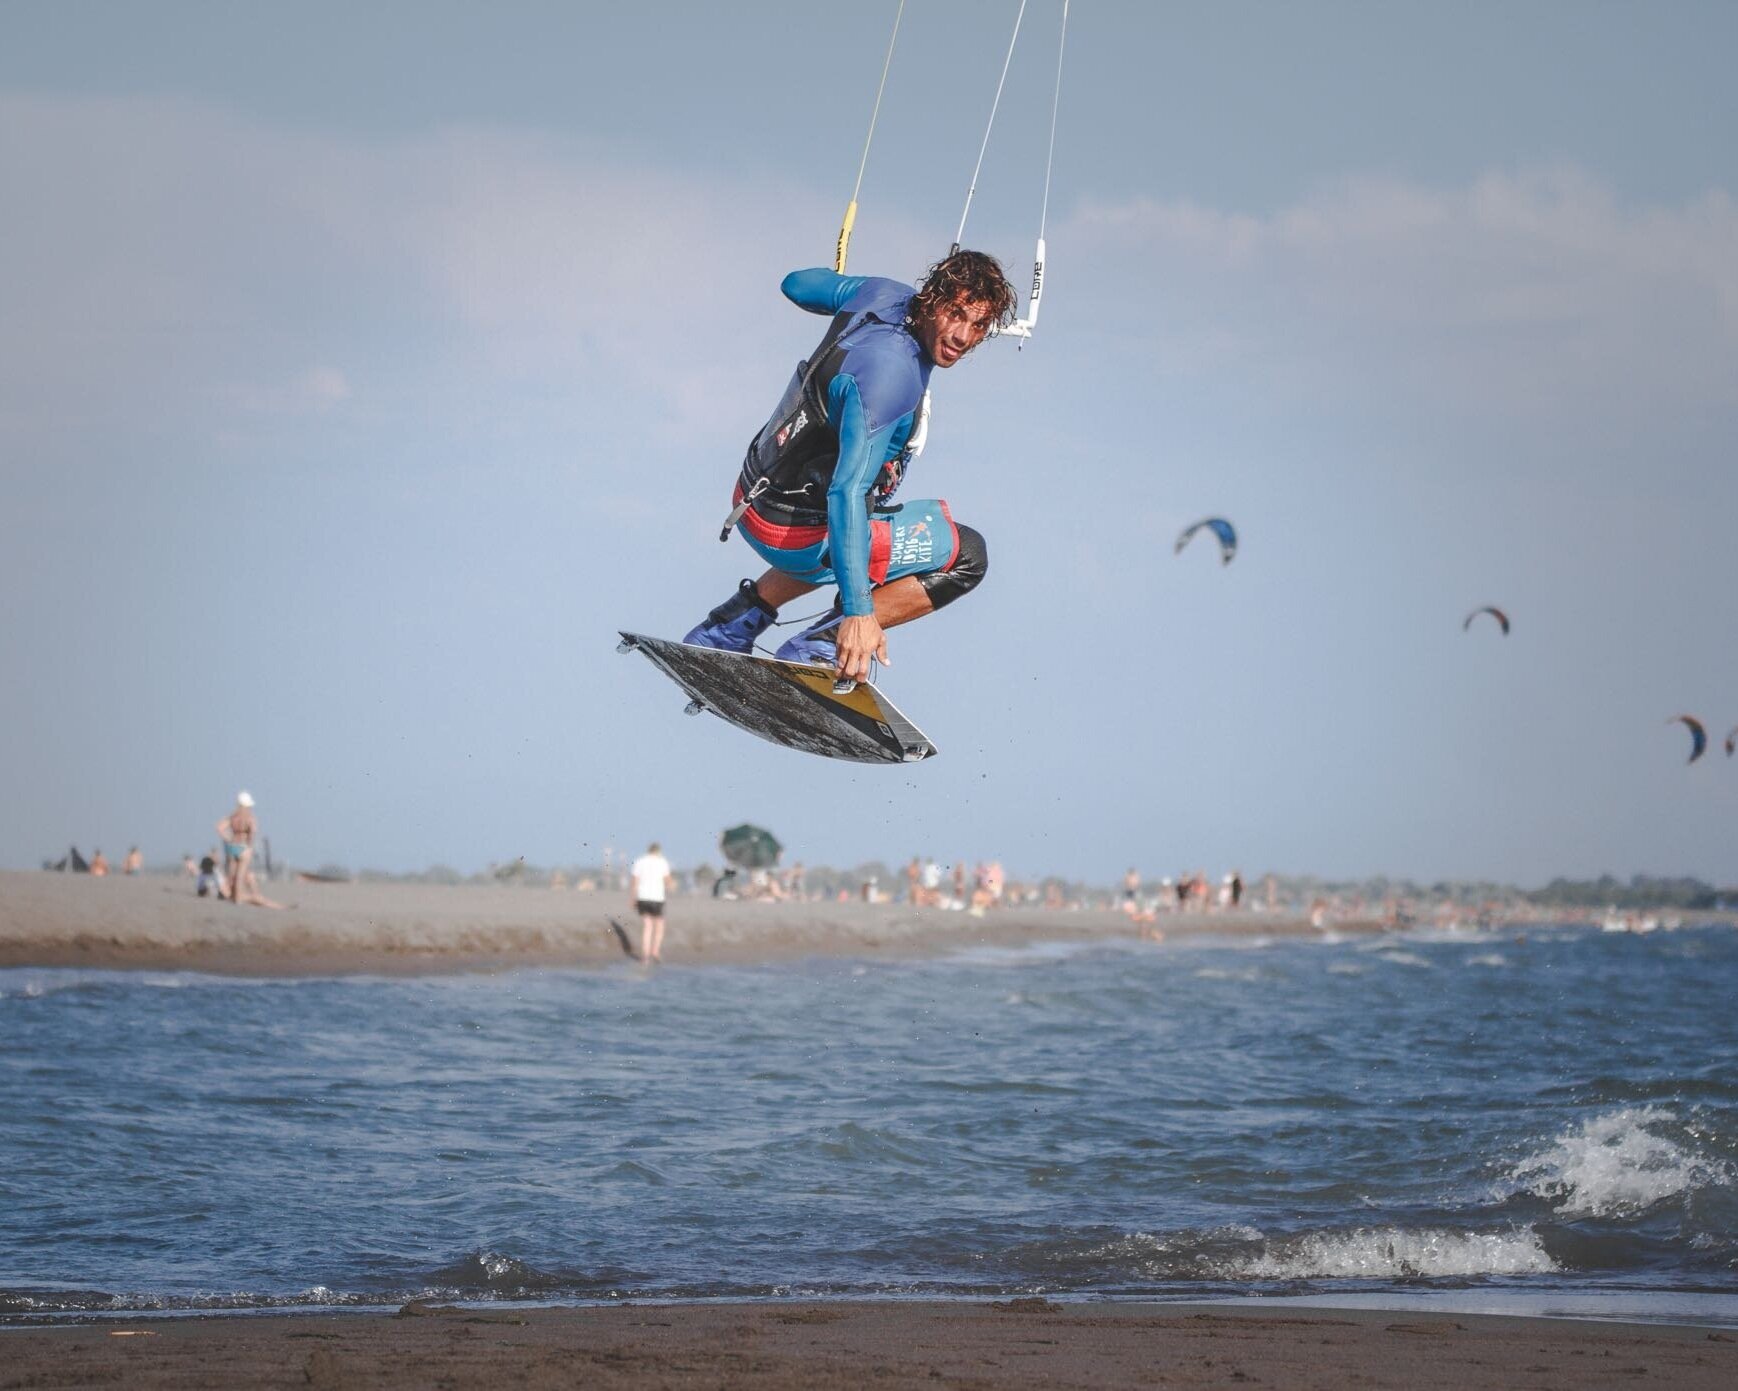 Kitesurf-Sprung mit Grab